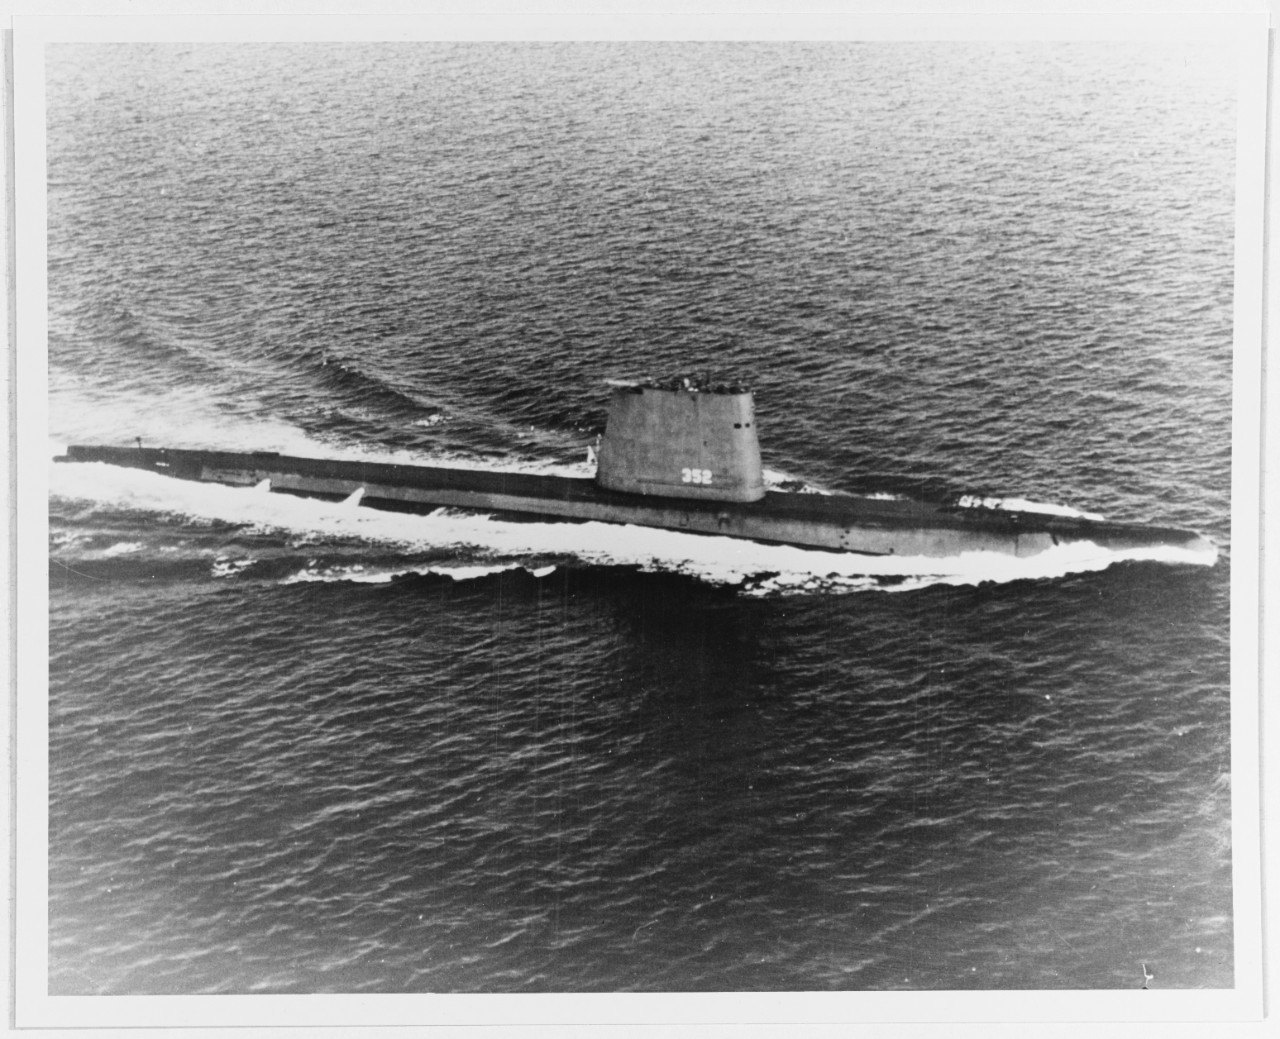 USS HALFBEAK (SS-352)